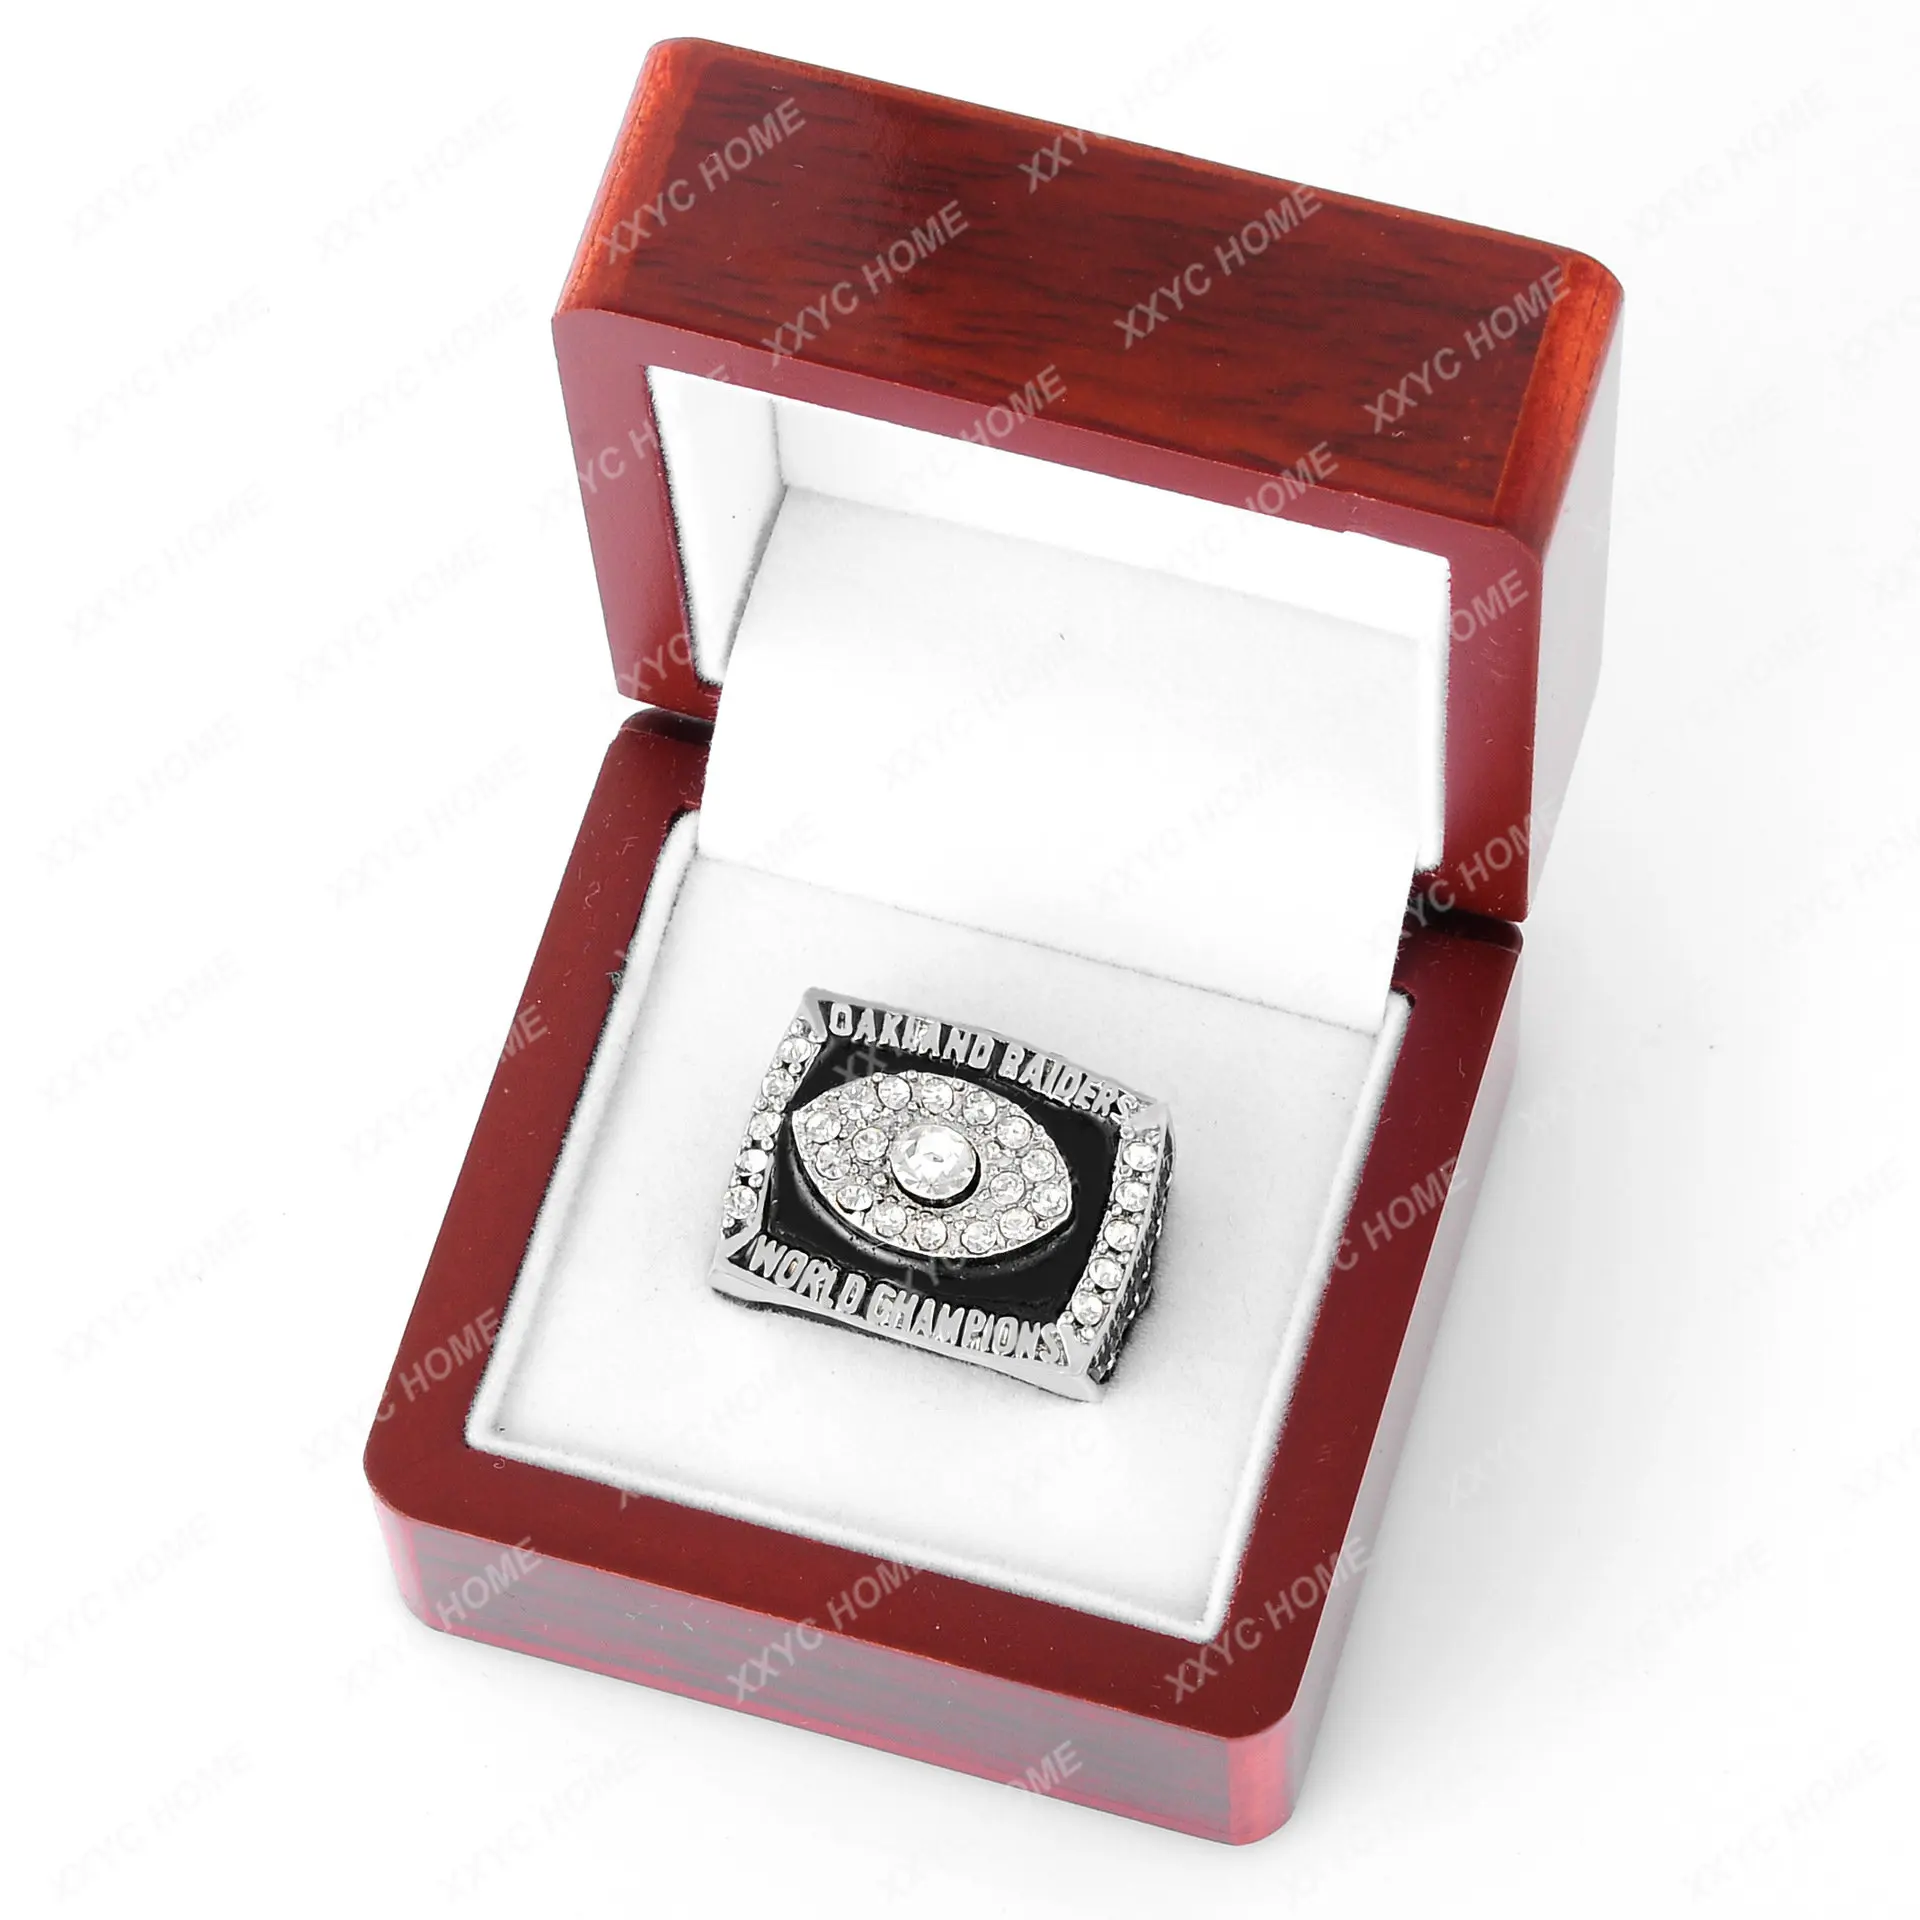 

Мужское кольцо с индивидуальным продвинутым дизайном, доступный роскошный модный трендовый мужской браслет